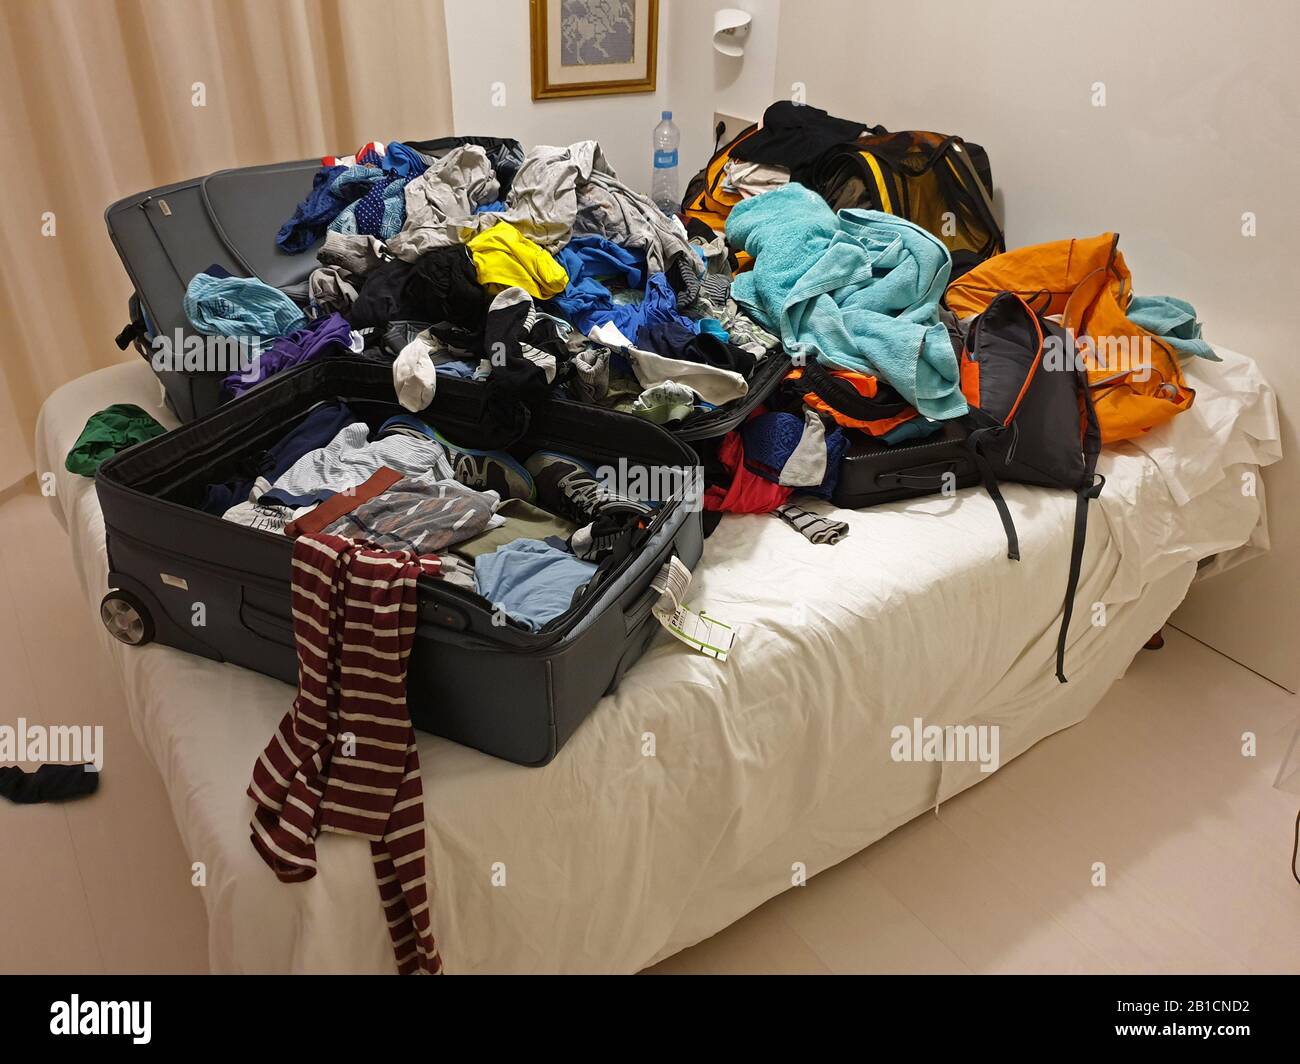 Chaotiquement emballer une valise dans un hôtel après les vacances, Espagne, Iles Baléares, Majorque Banque D'Images